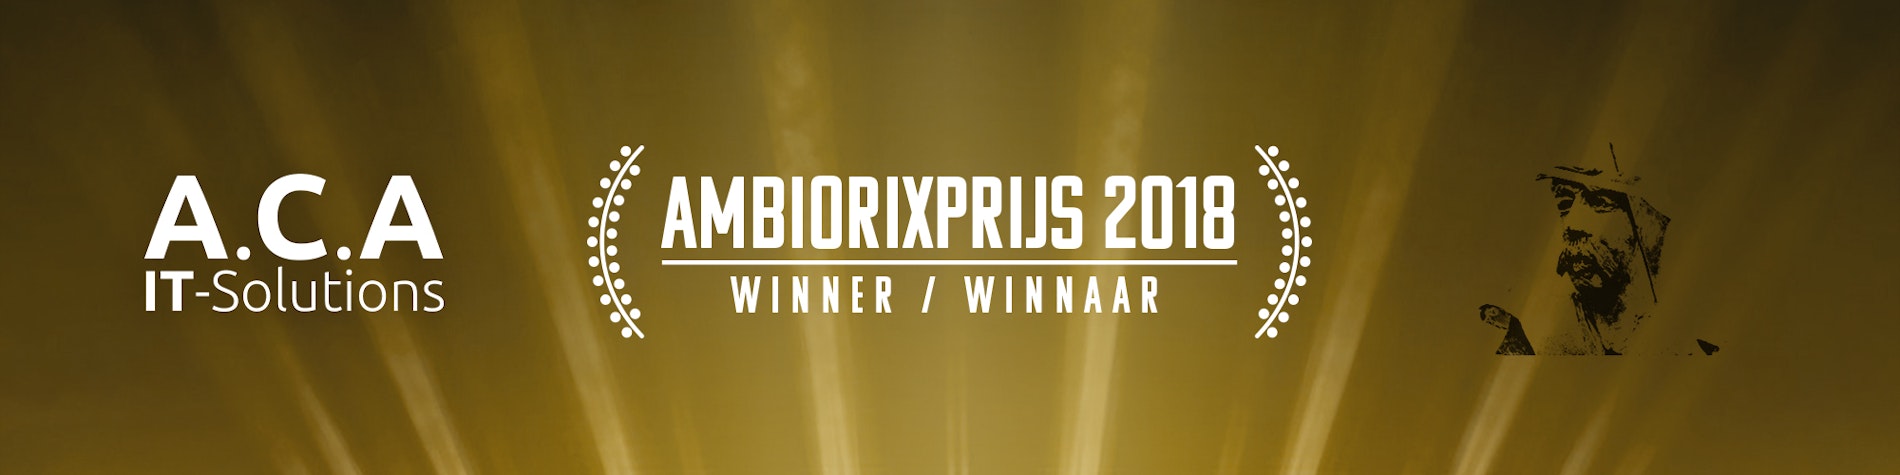 ACA wint de Ambiorixprijs 2018